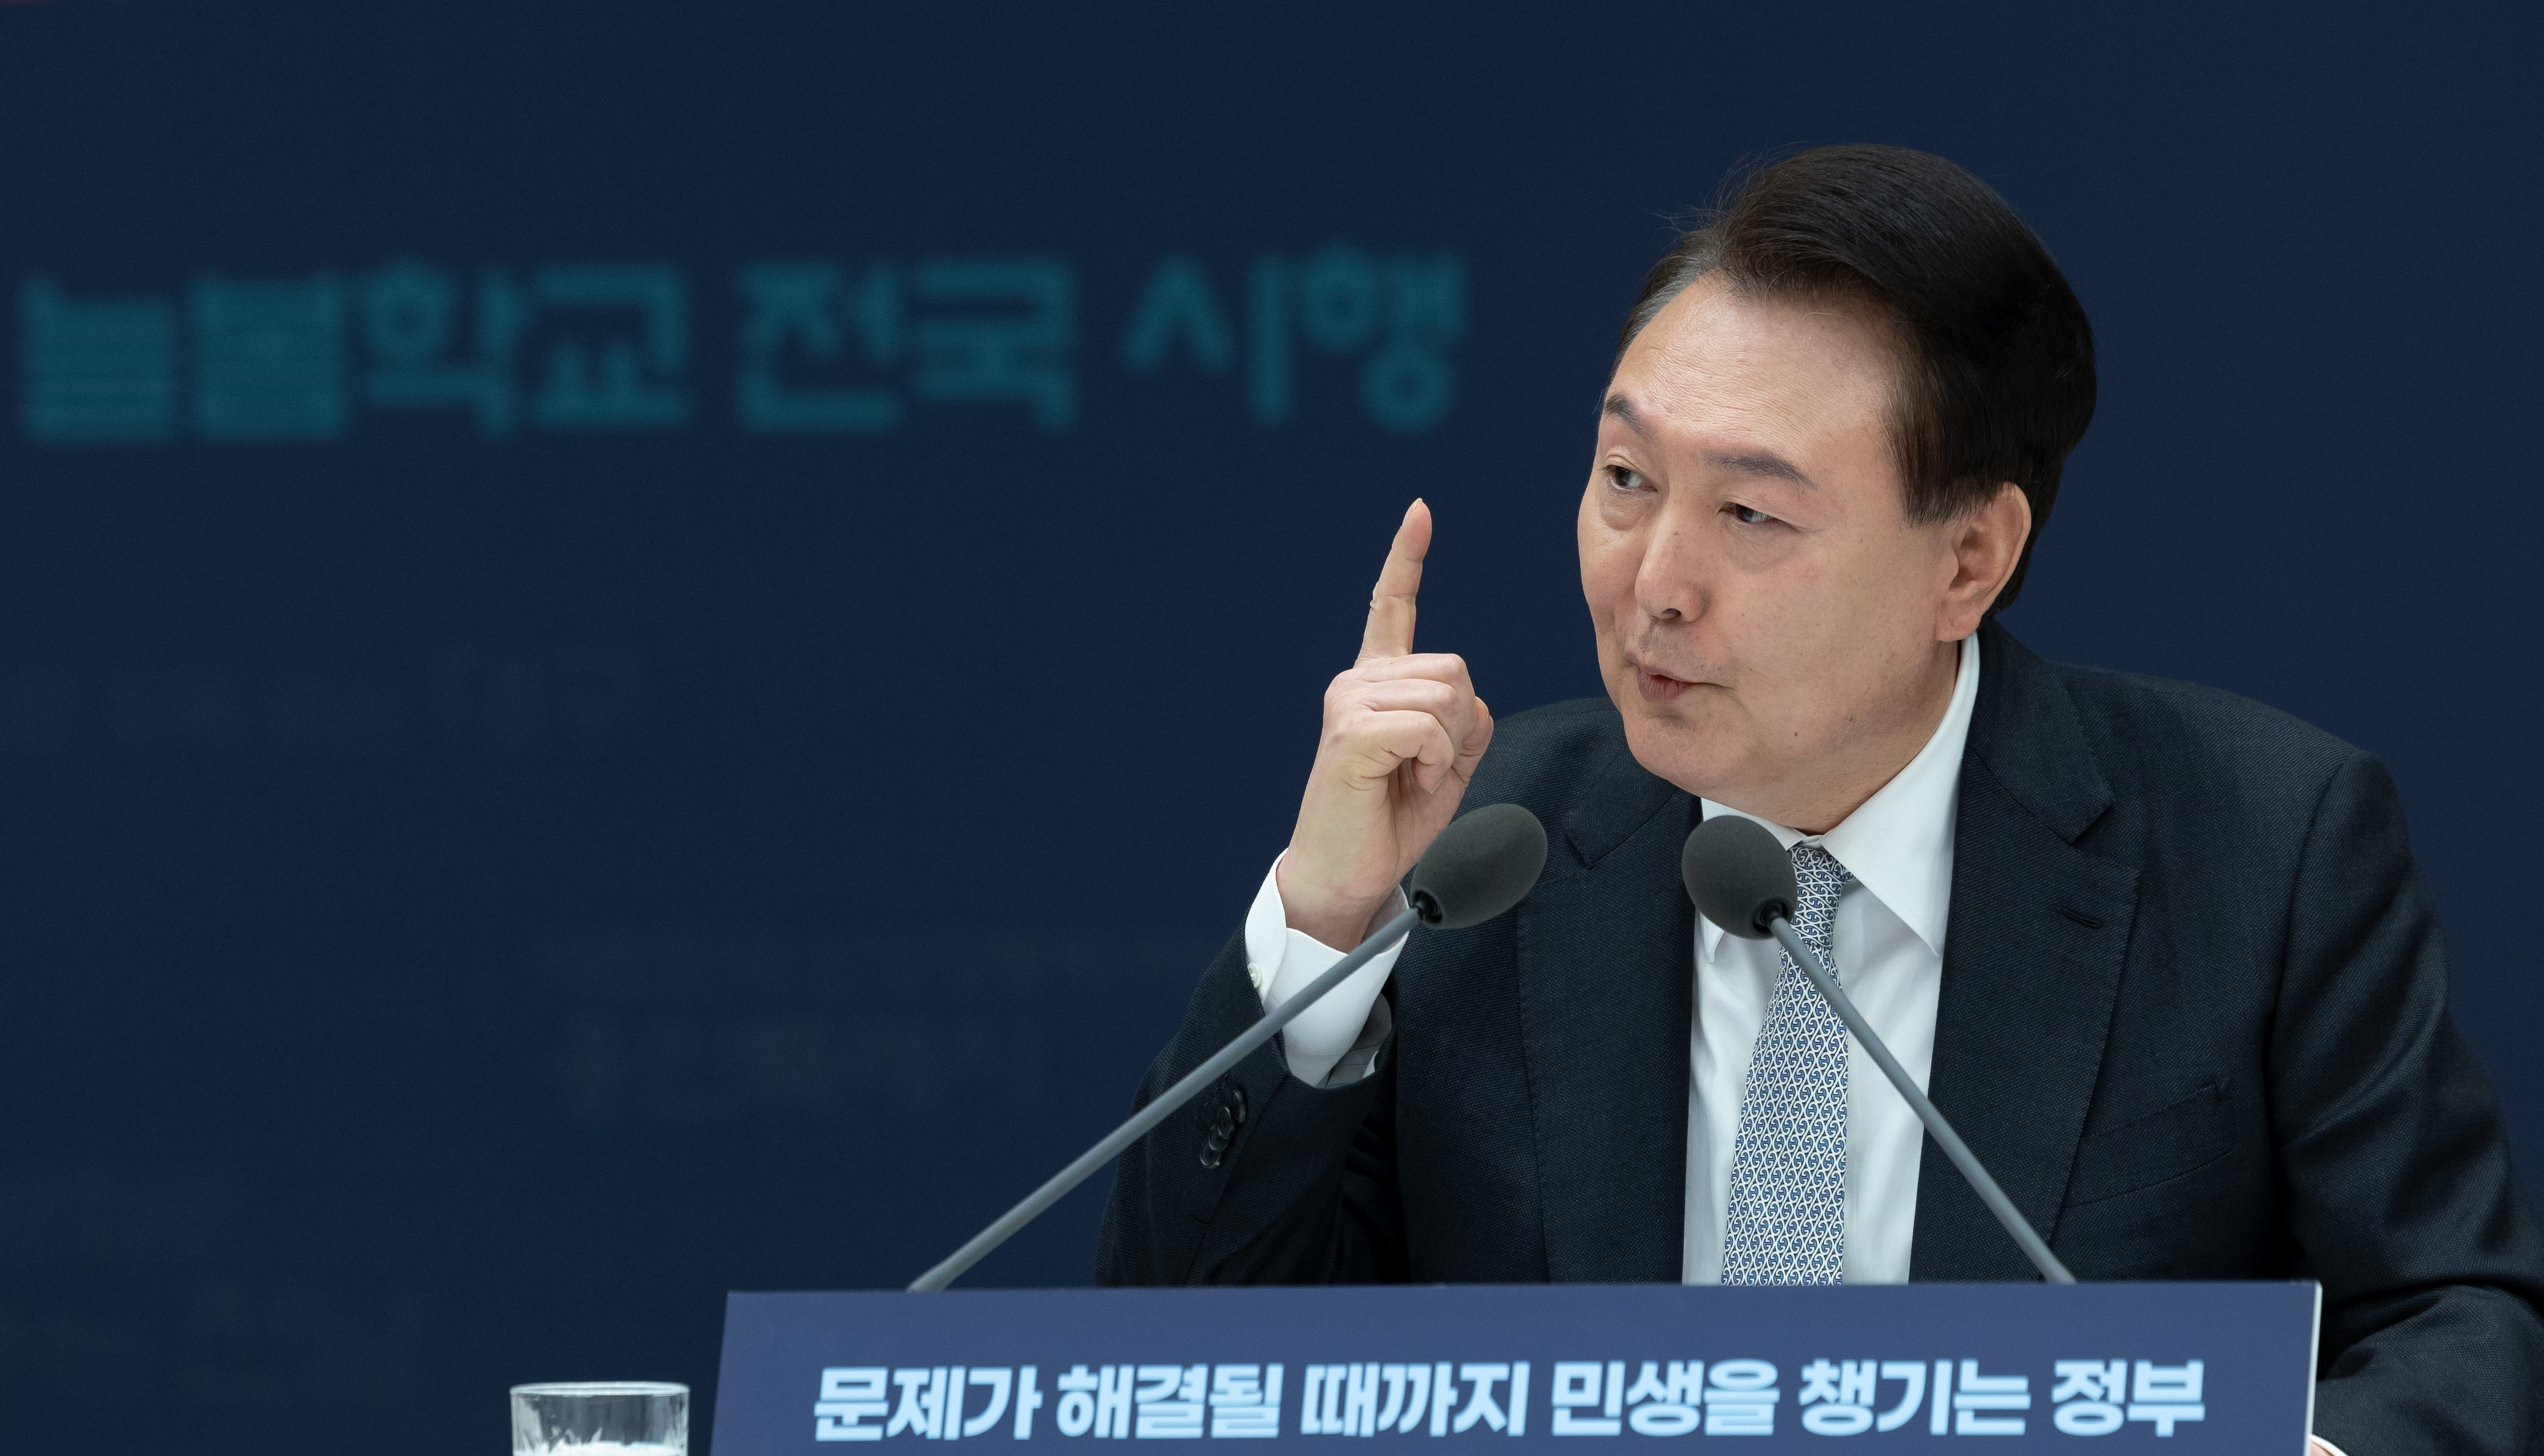 민생토론회 후속조치 회의, 윤석열 대통령 발언